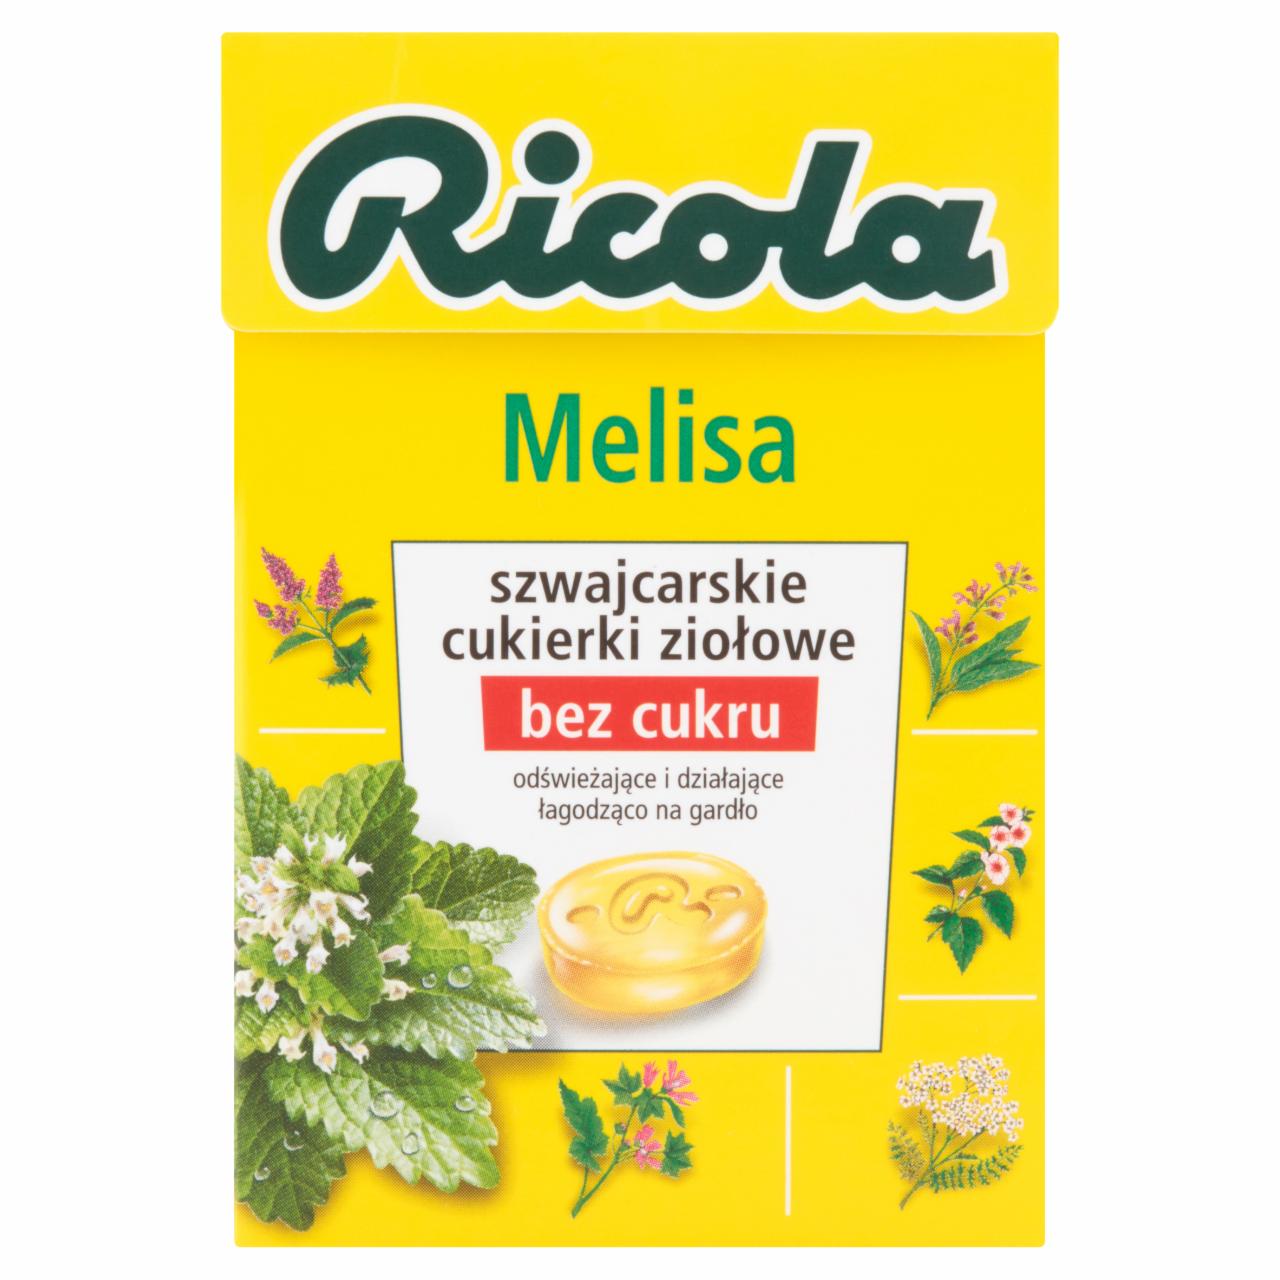 Zdjęcia - Ricola Melisa szwajcarskie cukierki ziołowe 40 g